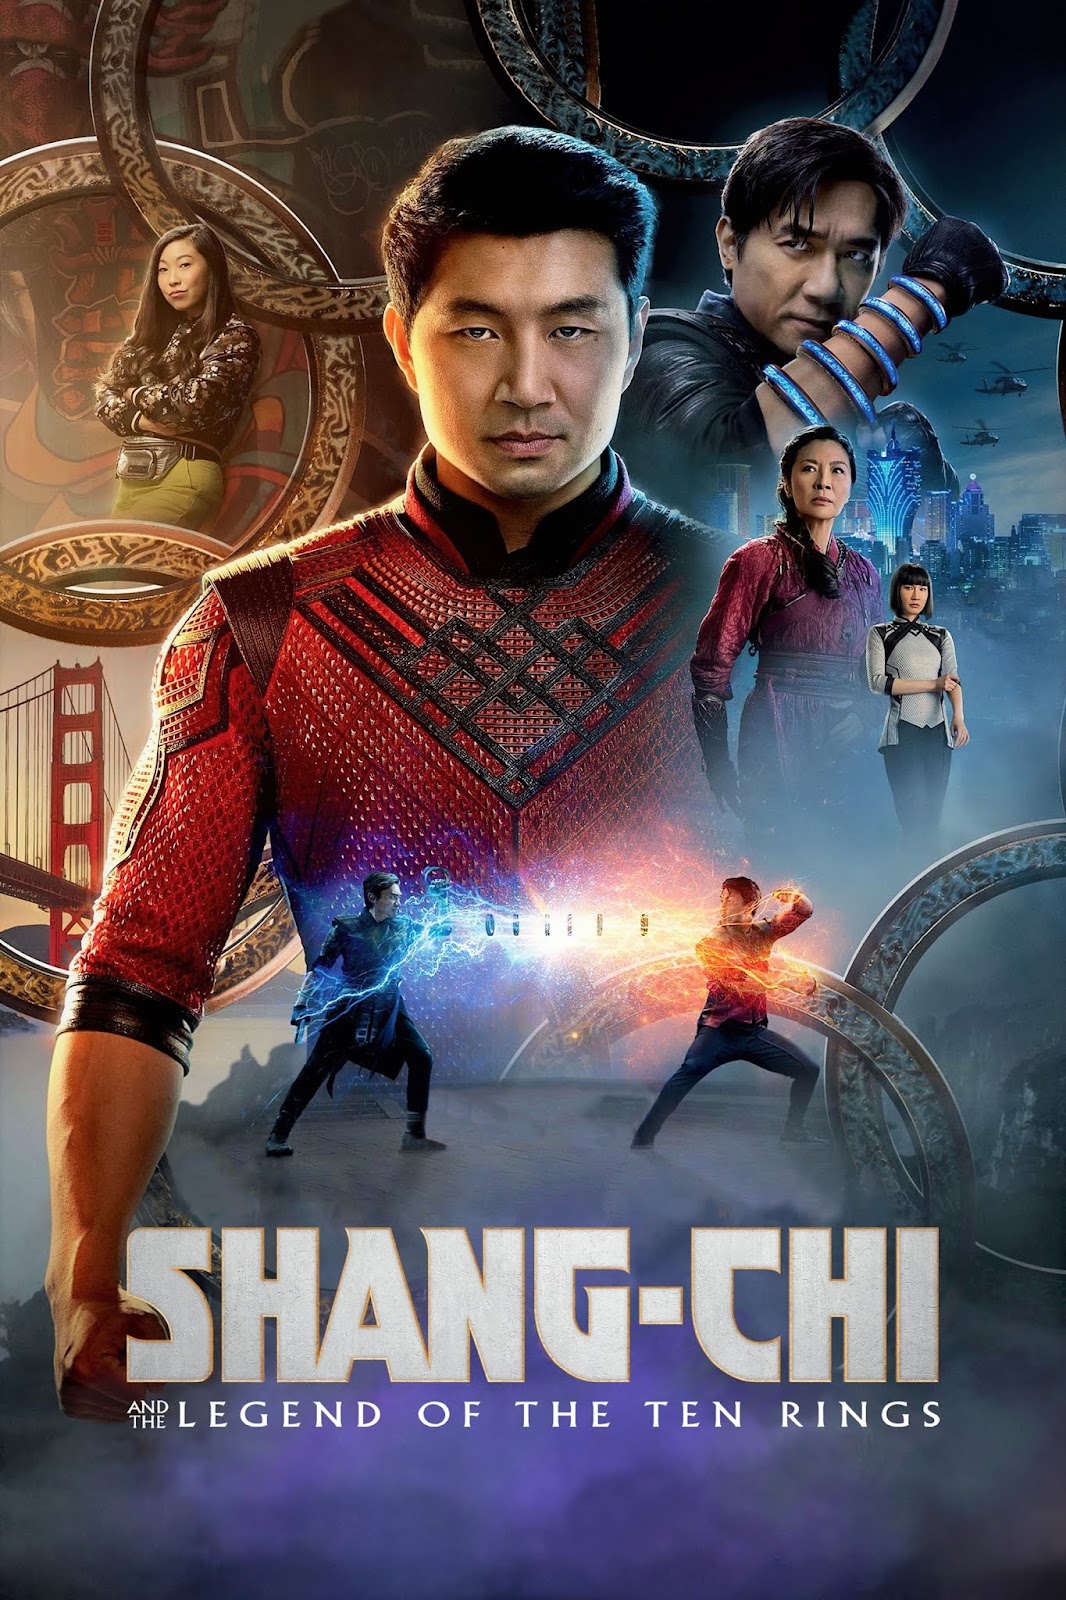 Shang-Chi Và Huyền Thoại Thập Luân - Shang-Chi And The Legend Of The Ten Rings (2021)